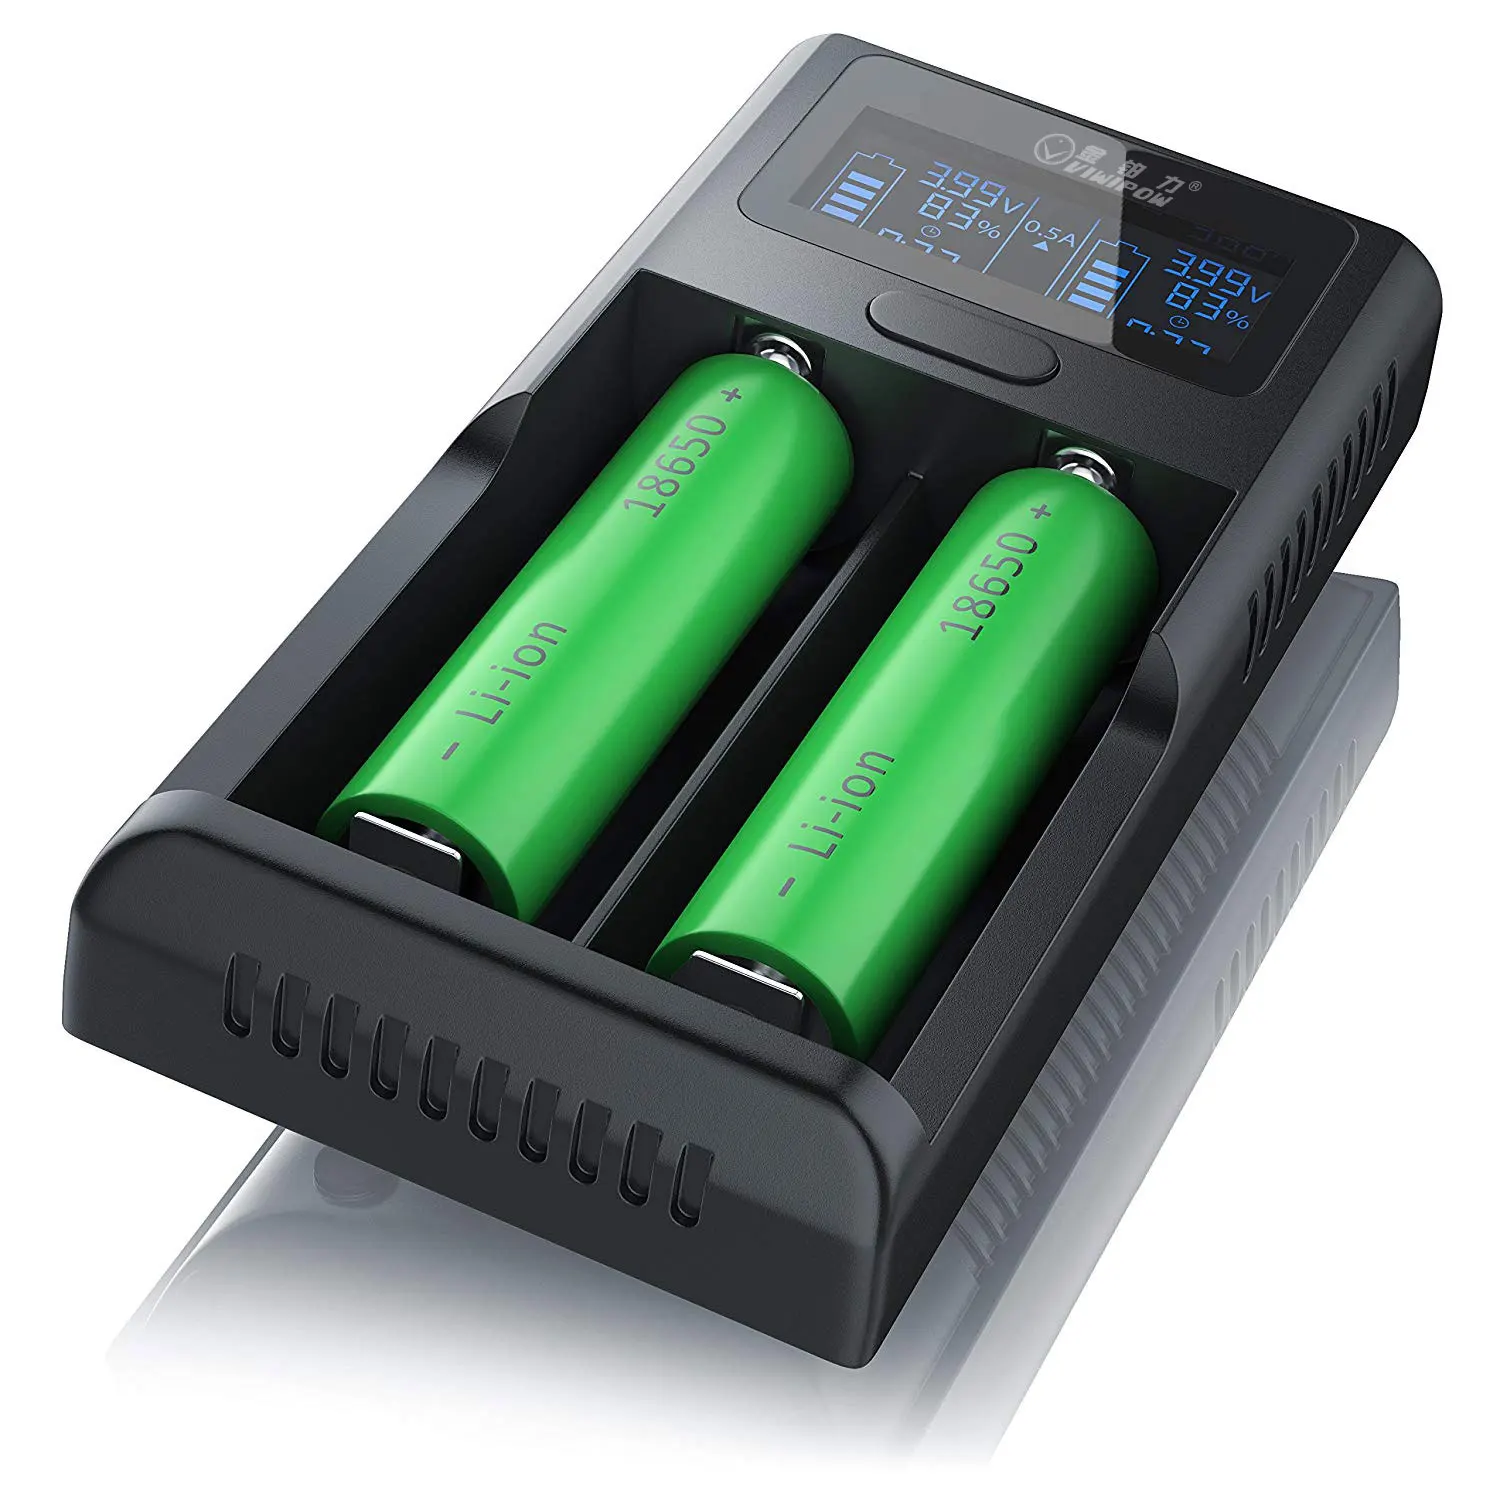 Battery x. Зарядка li-ion аккумуляторов 18650. Зарядка для АКБ 18650. Зарядка для аккумуляторных батареек 18650. Юсб зарядка 18650.